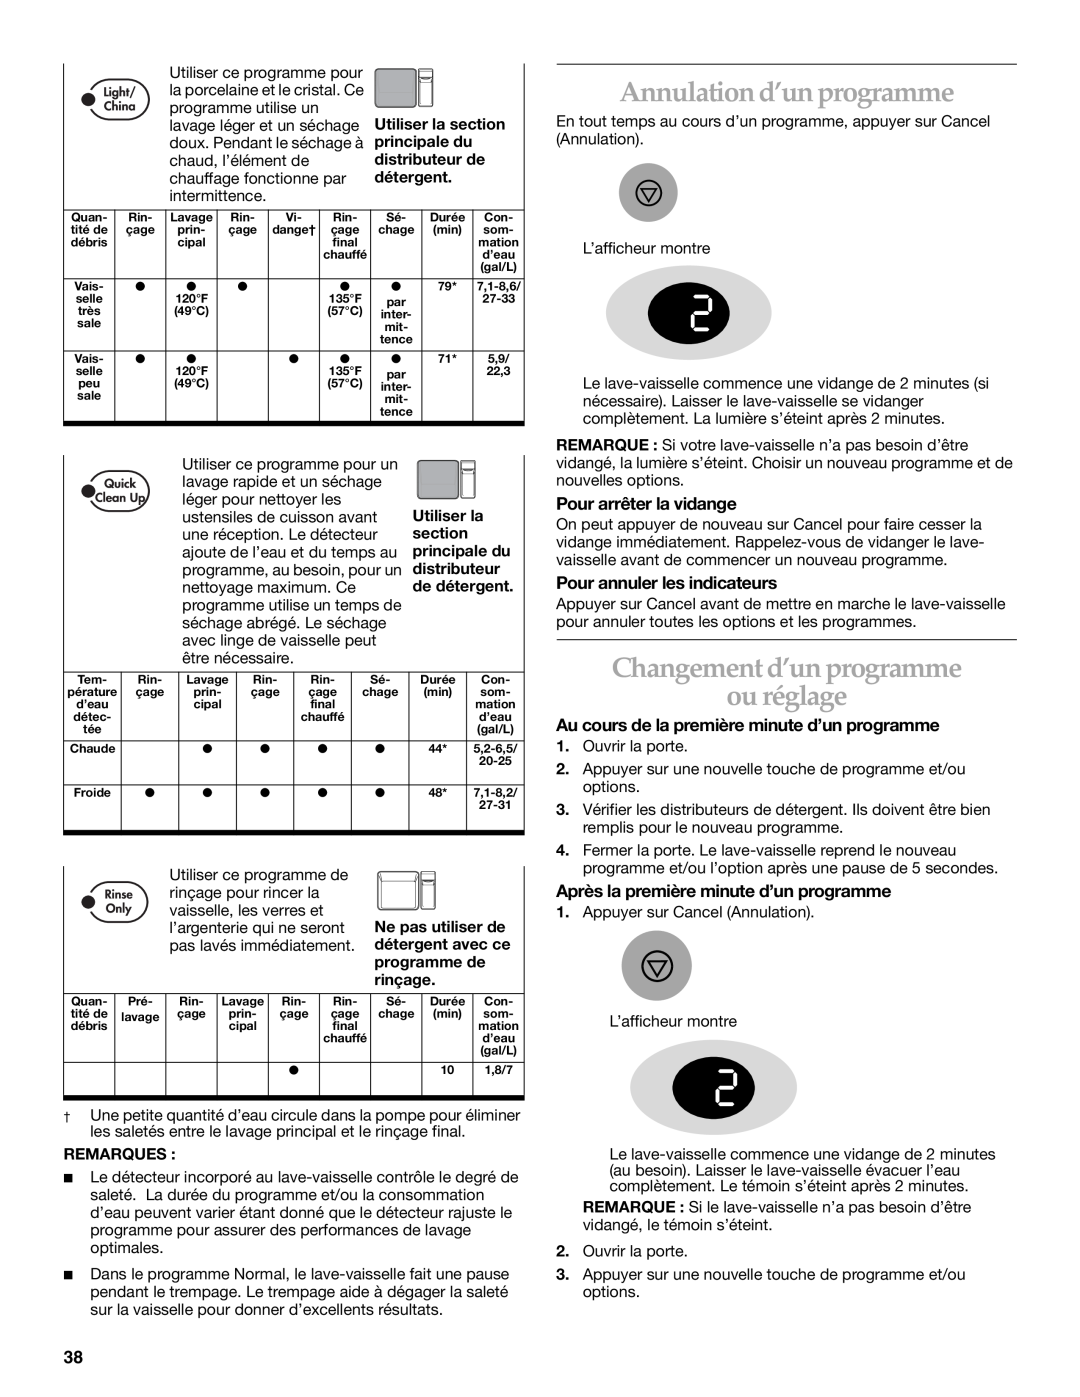 KitchenAid KUDS01DL manual Annulation d’un programme, Changement d’un programme, ou réglage, Pour arrêter la vidange 